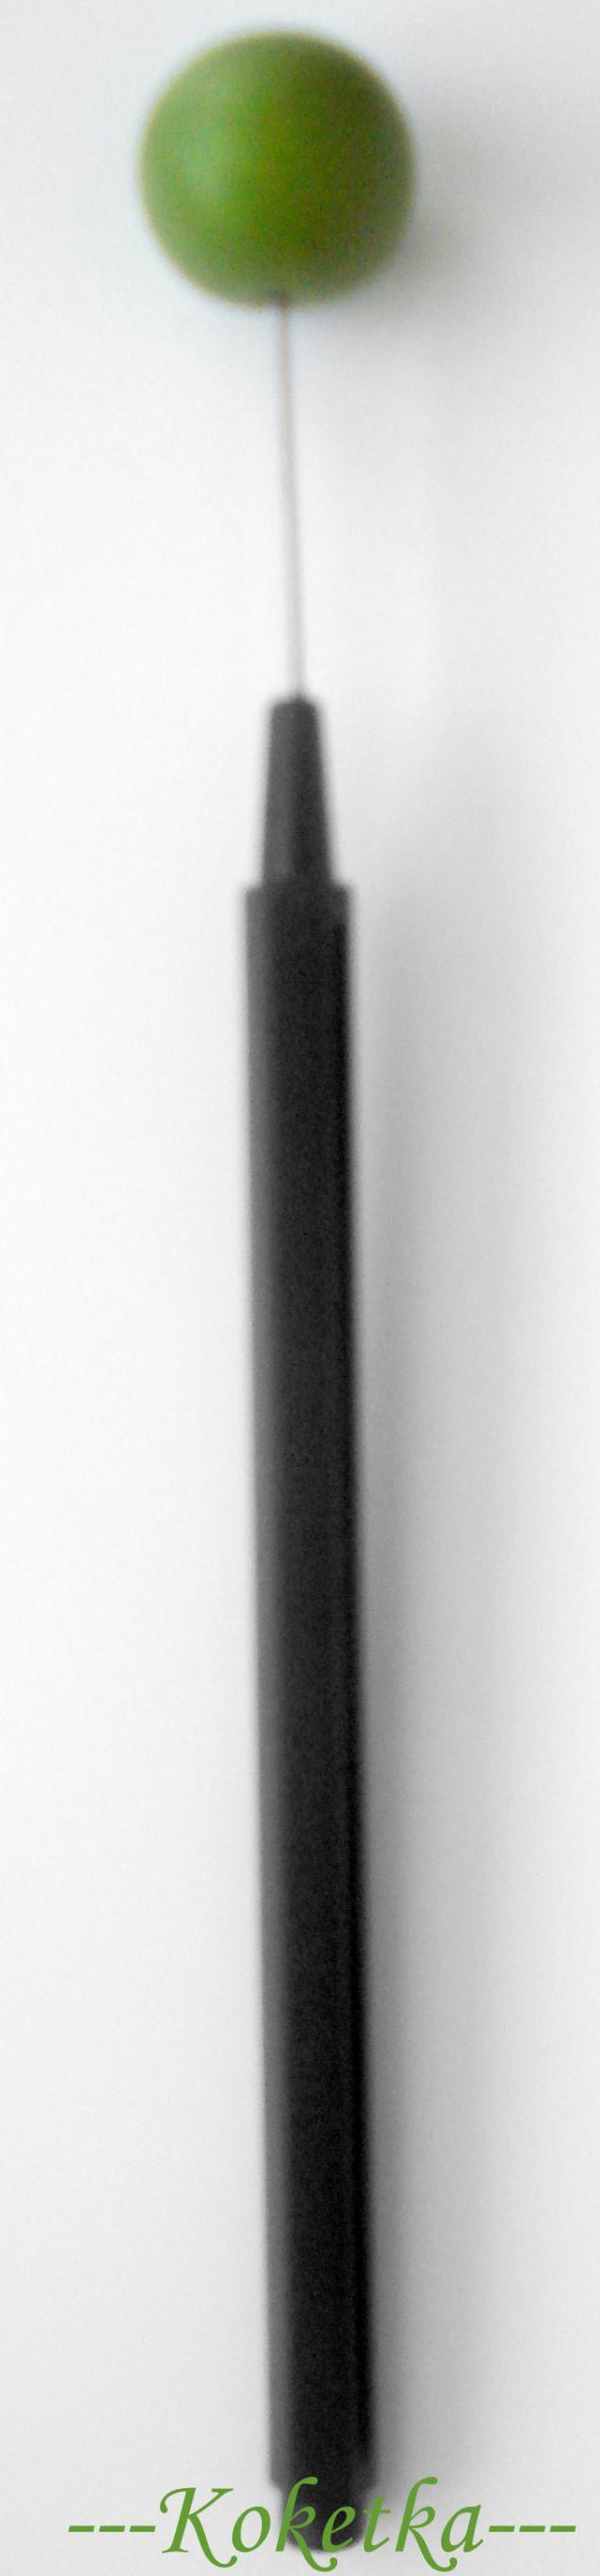 Кольцо с цветком из полимерной глины., фото № 3